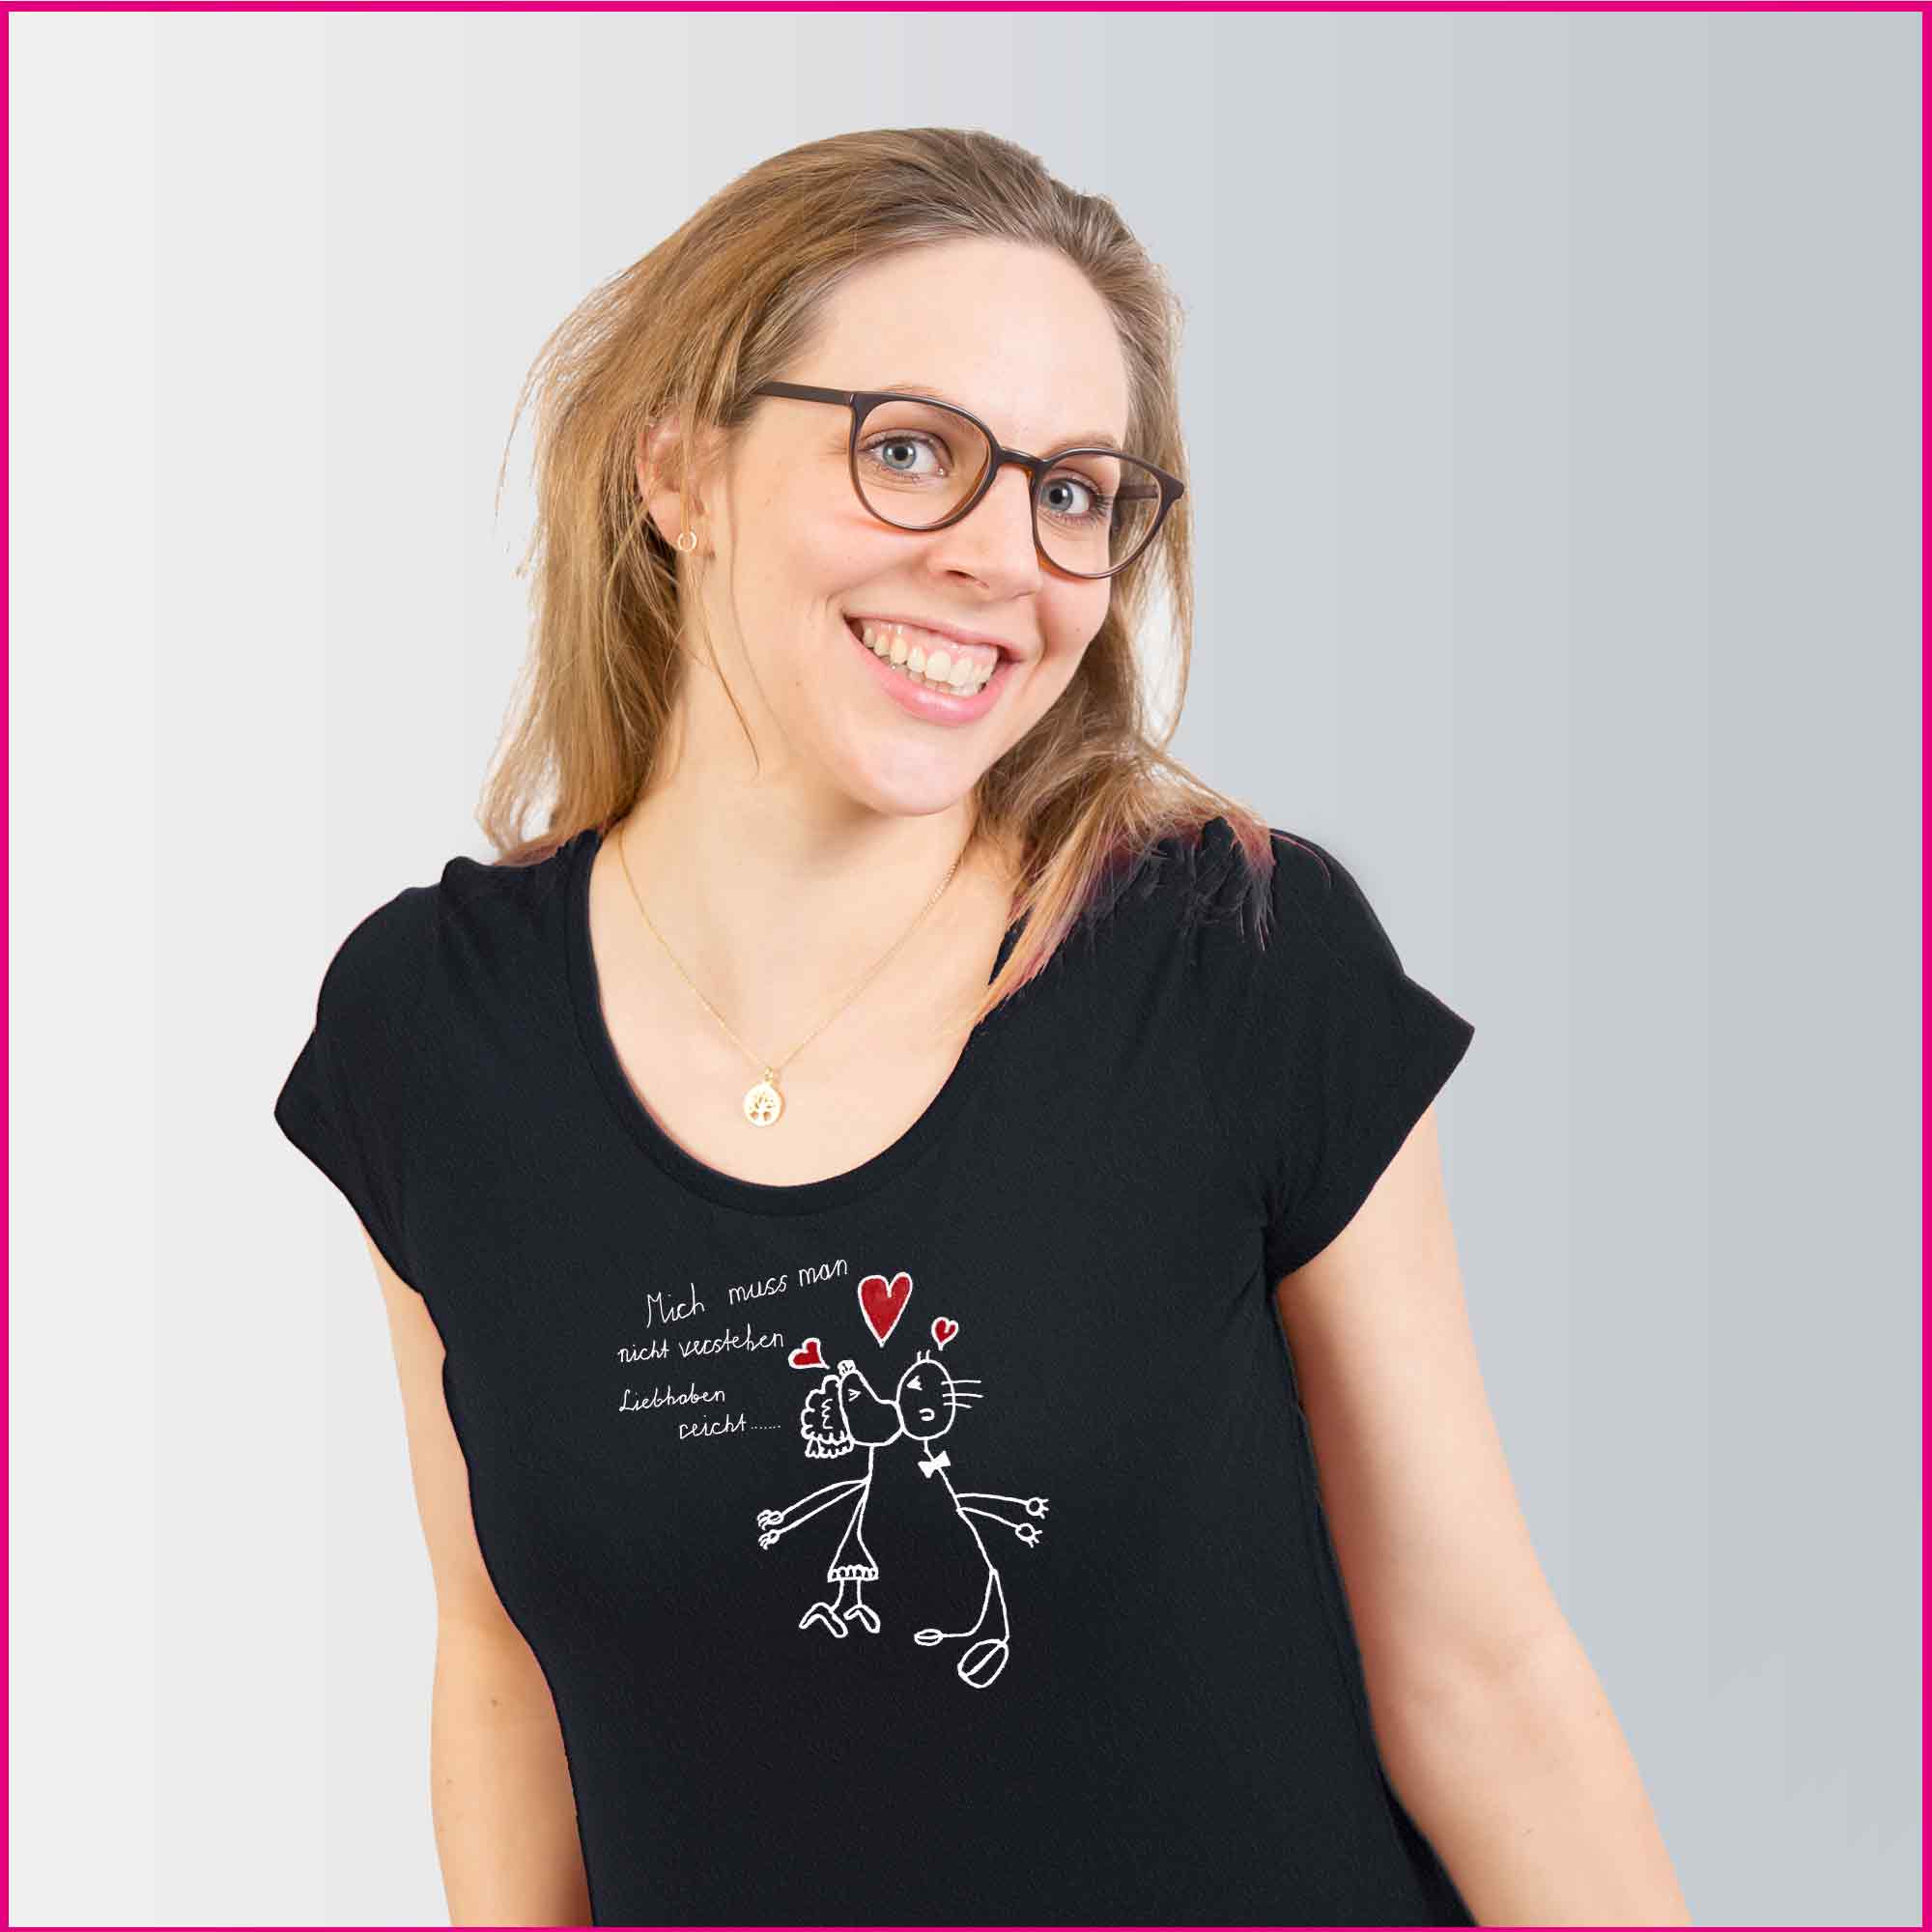 Produktfoto Frauen T-Shirt mit dem Motiv "Einfach liebhaben" von Richard Pilor